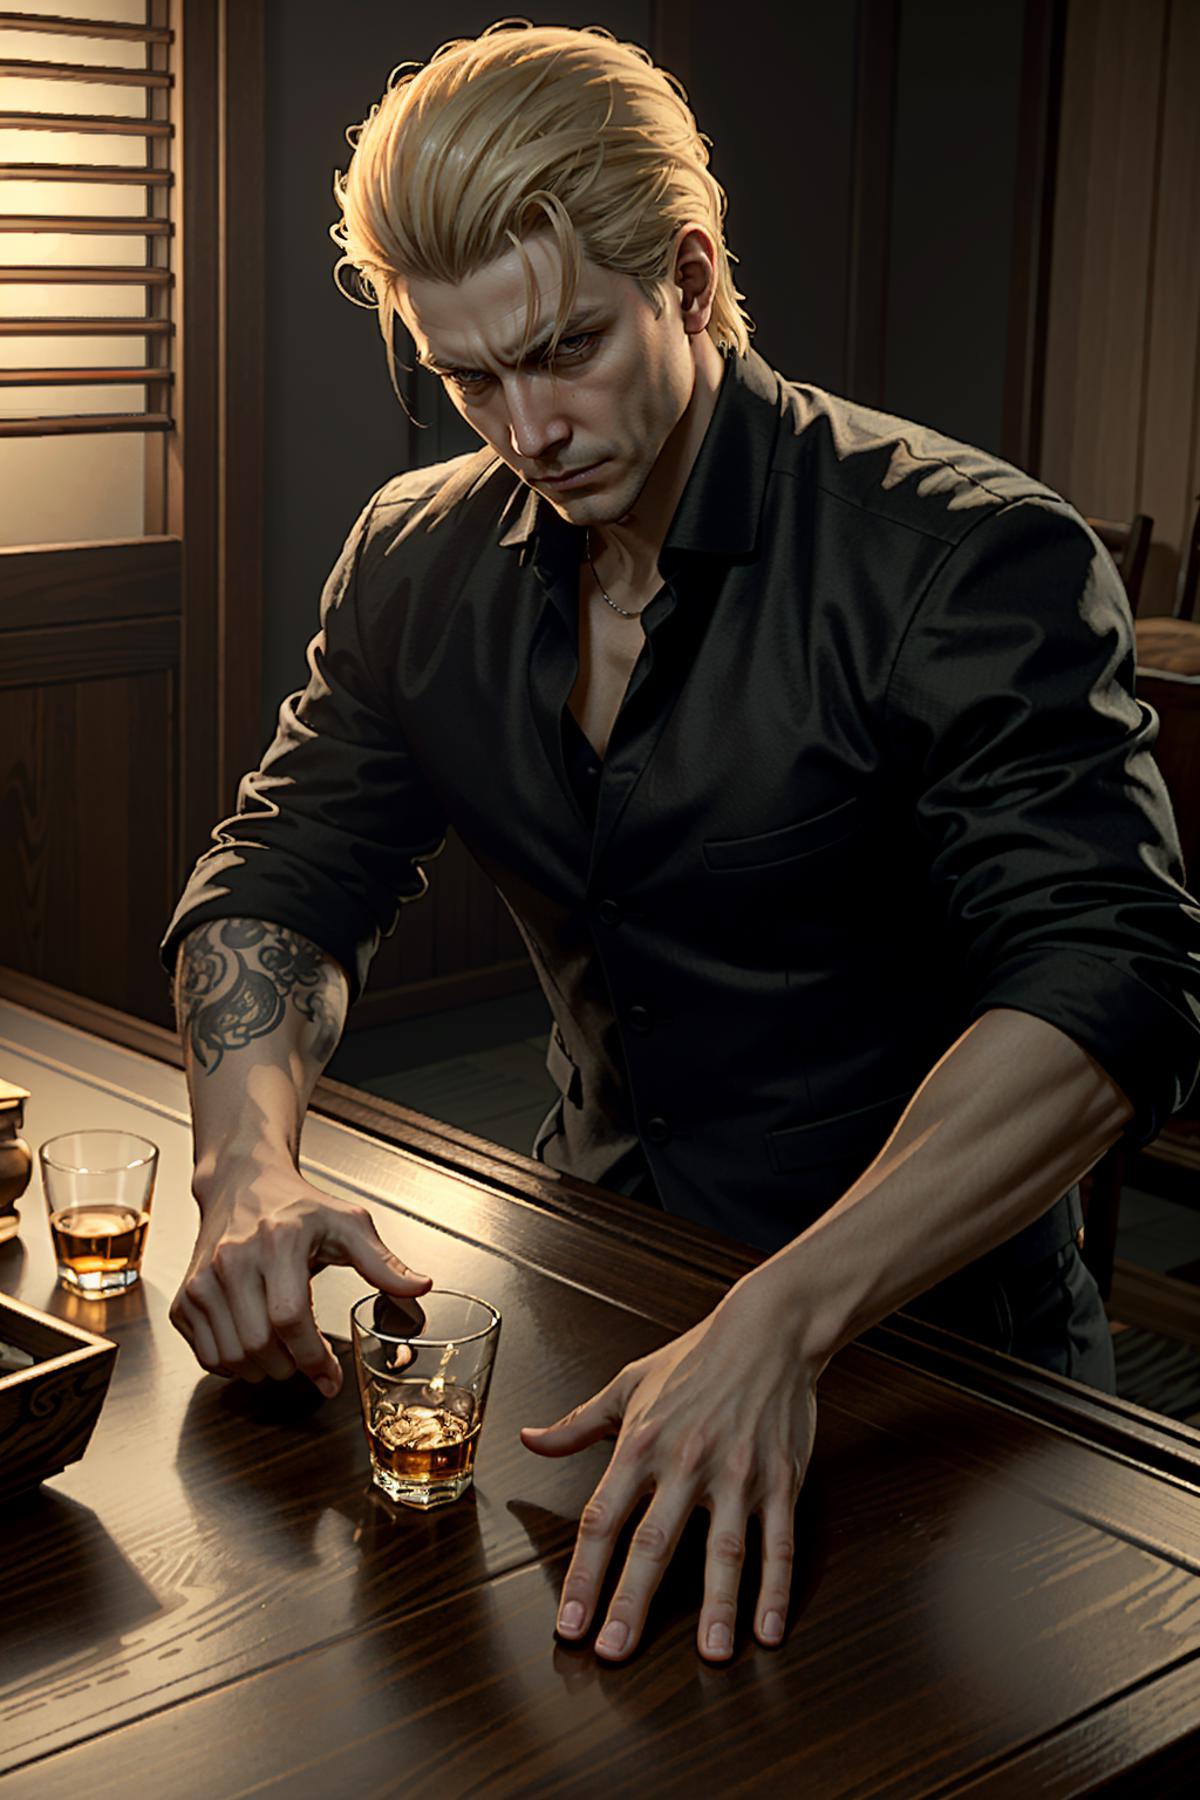 Albert Wesker from Resident Evil image by BloodRedKittie